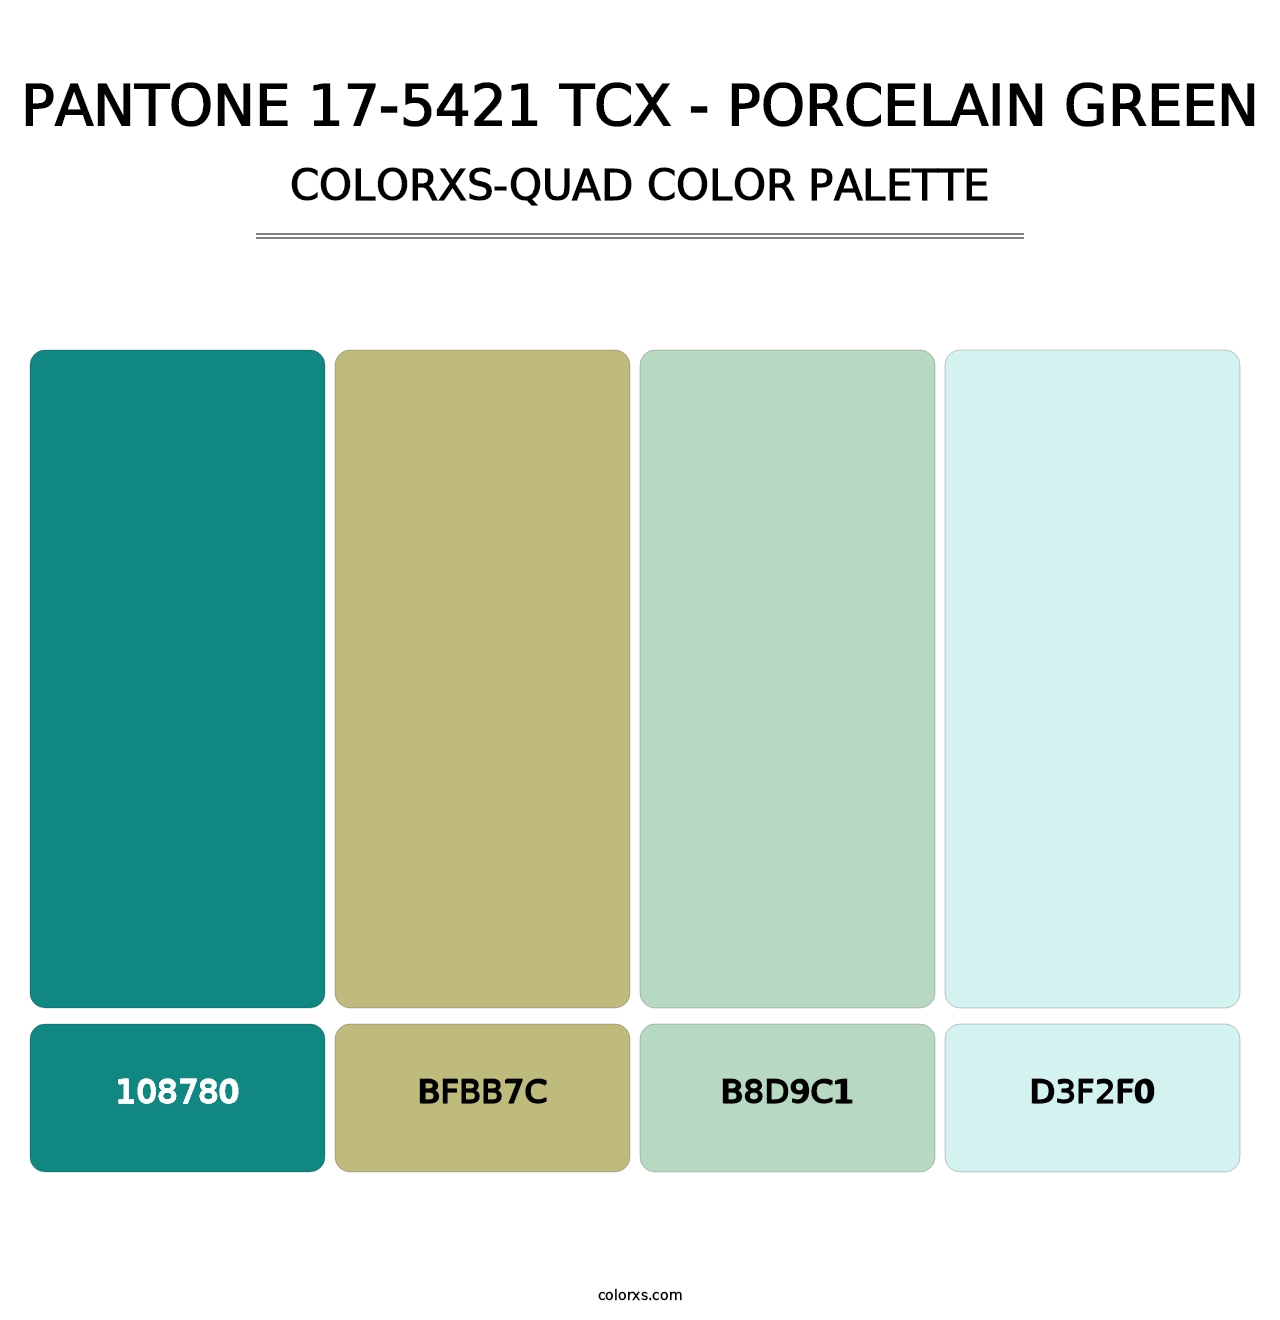 PANTONE 17-5421 TCX - Porcelain Green - Colorxs Quad Palette